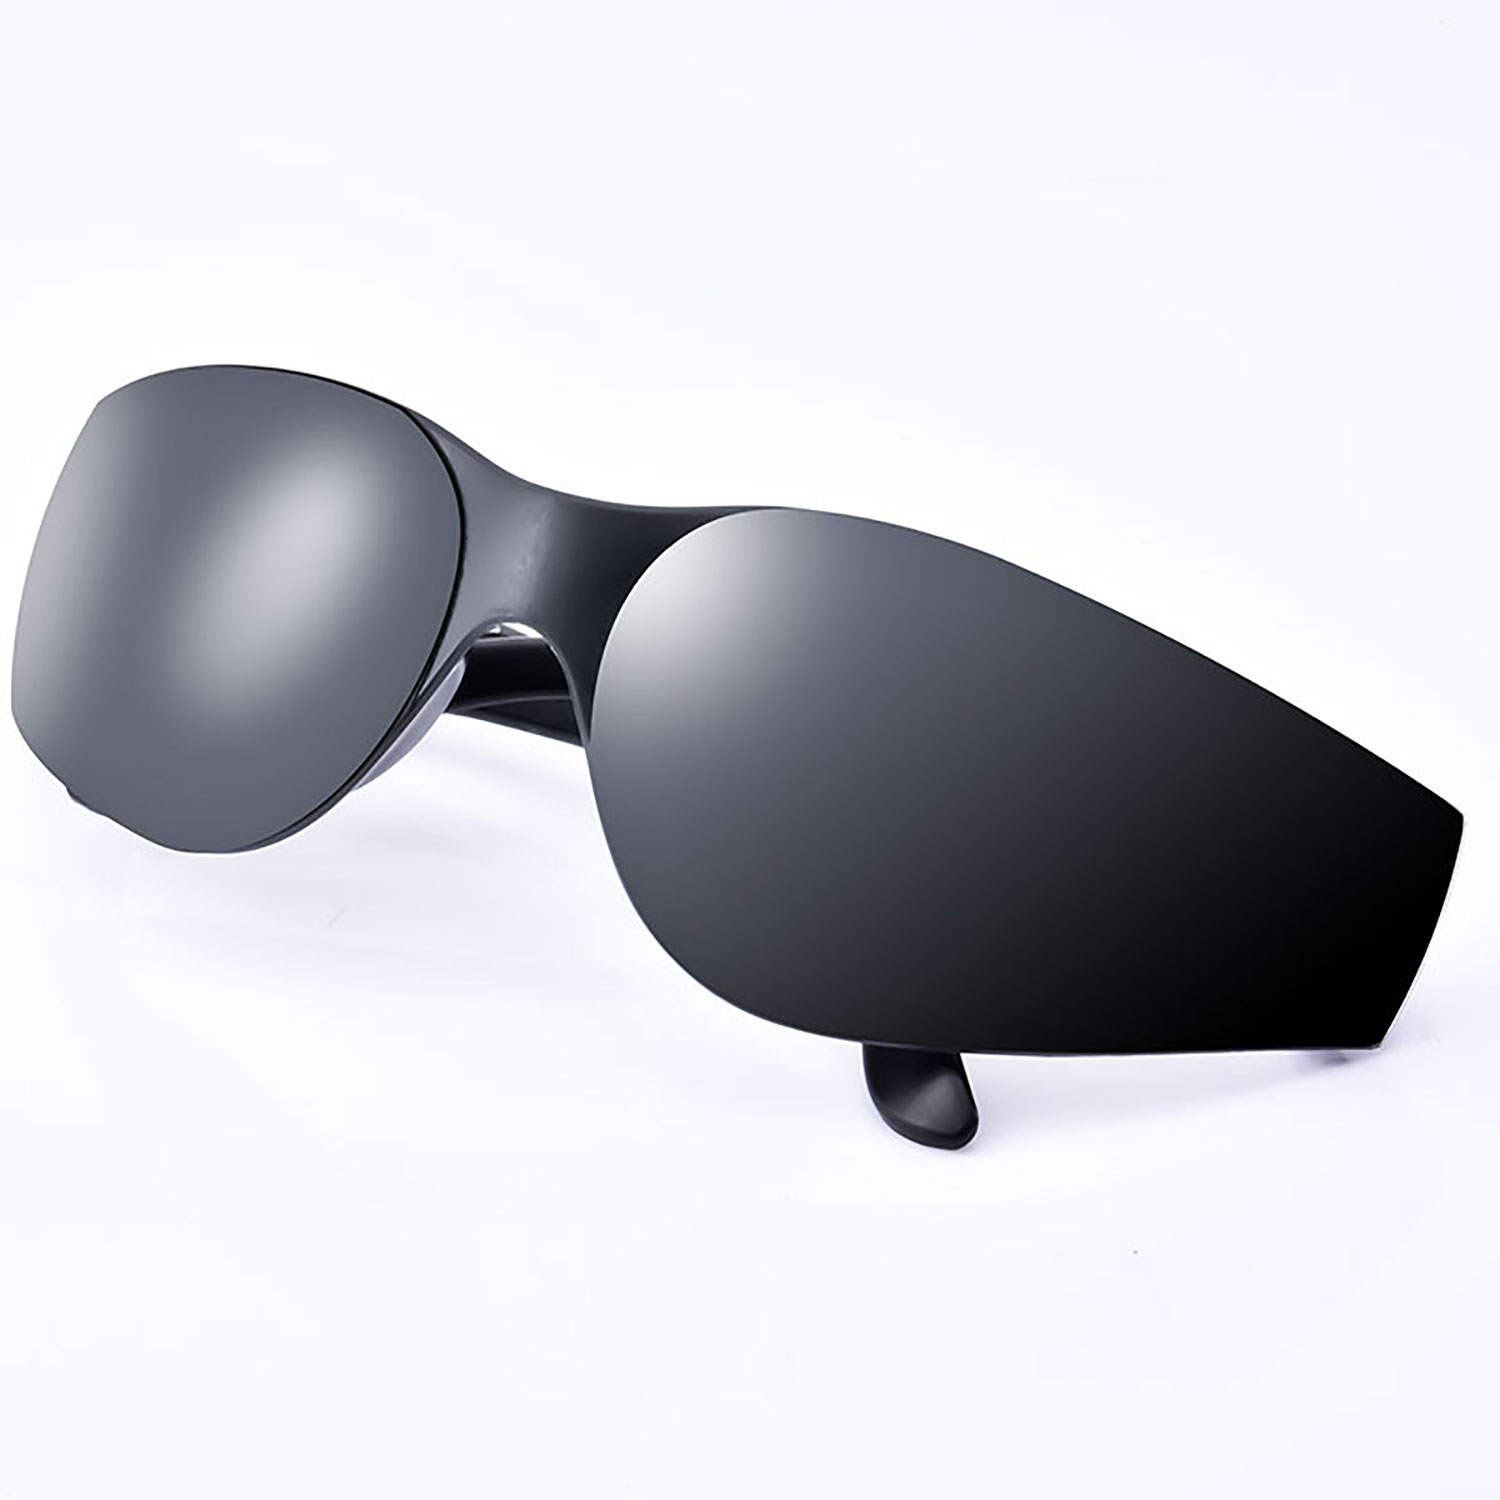 Bezpieczne okulary robocze SG001 czarne